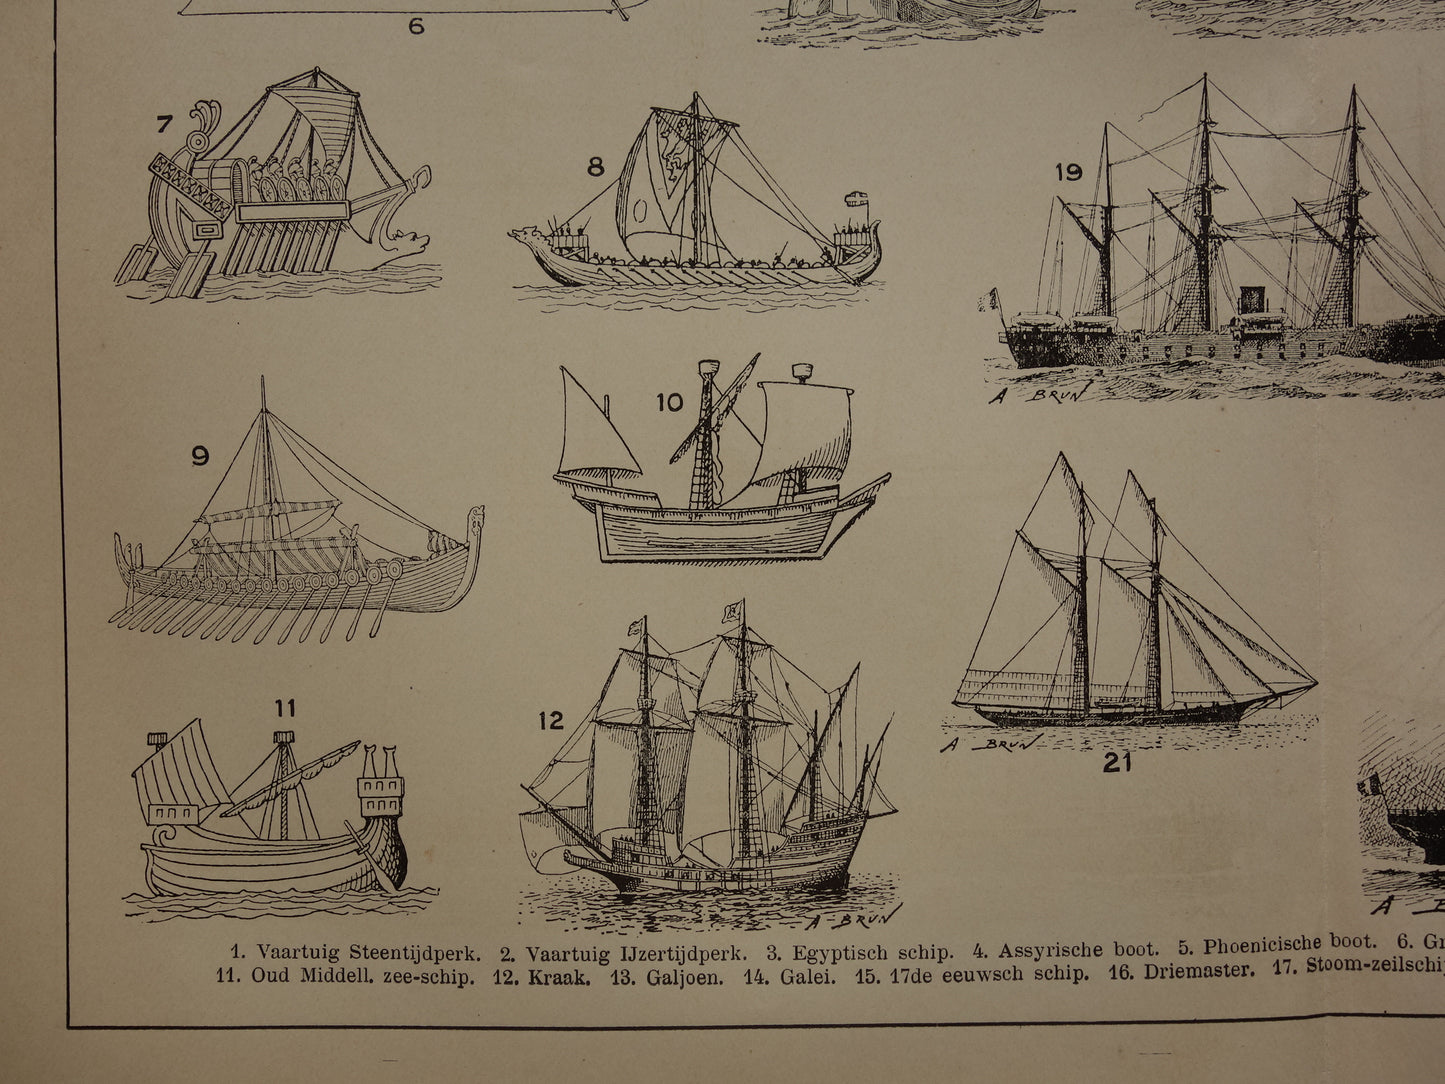 SCHEPEN antieke illustratie over geschiedenis Scheepsontwerp - 1909 originele oude schip scheepvaart print - vintage marine prints